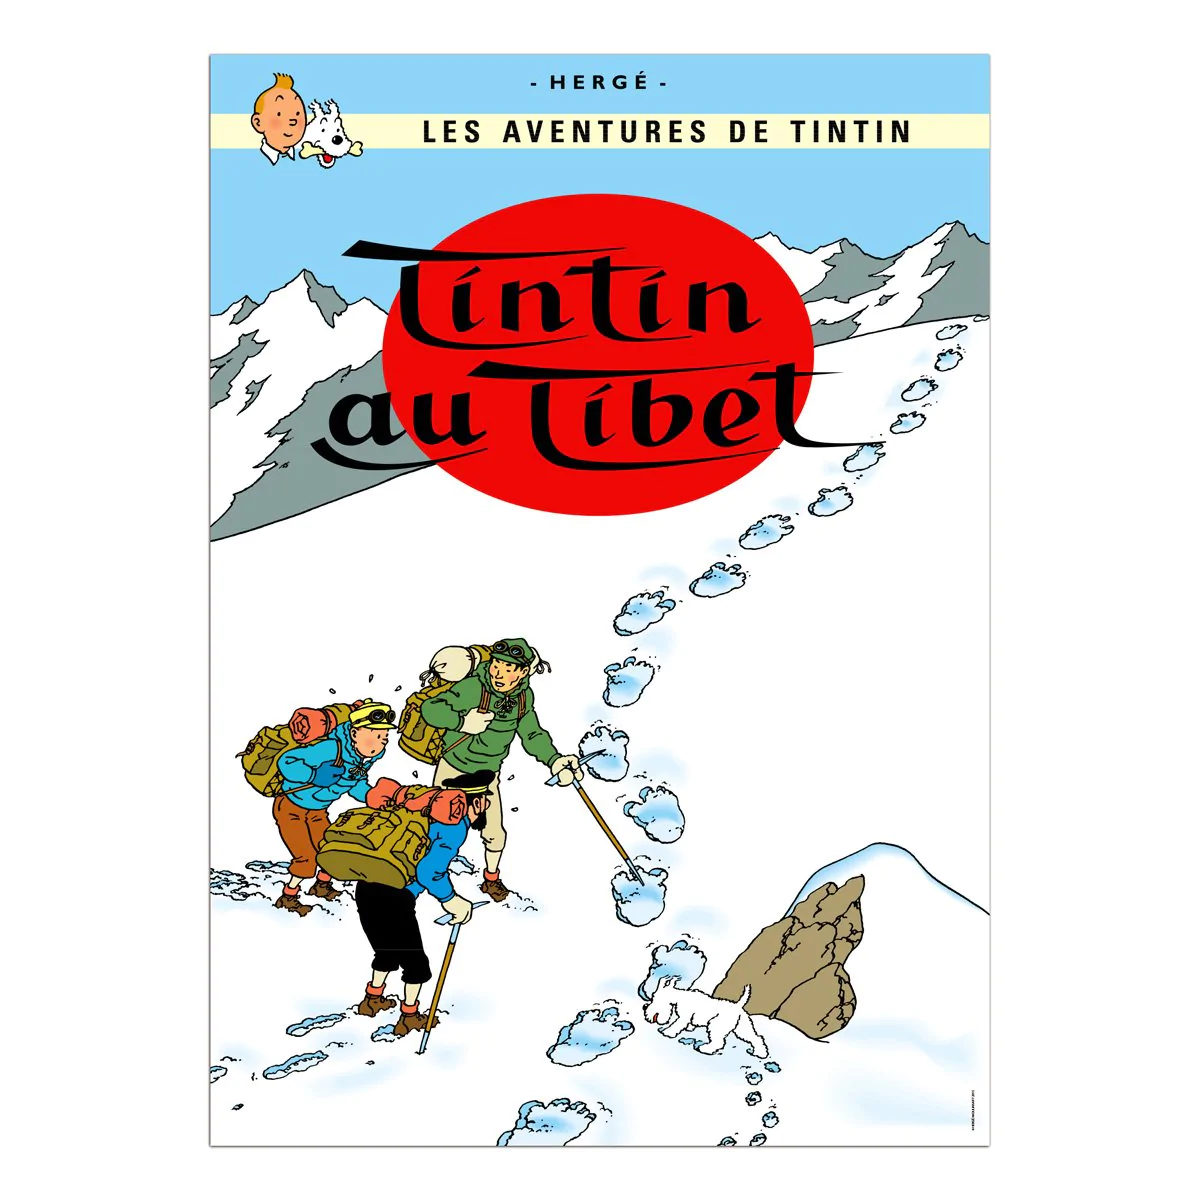 Tintin Posters - Tintin in Tibet - Tintin - Brand_Tintin - Collectibles - Home_Decor - Home_French Nostalgia - Tintin - posters-fr-2015-20_1200_1TintinauTibet